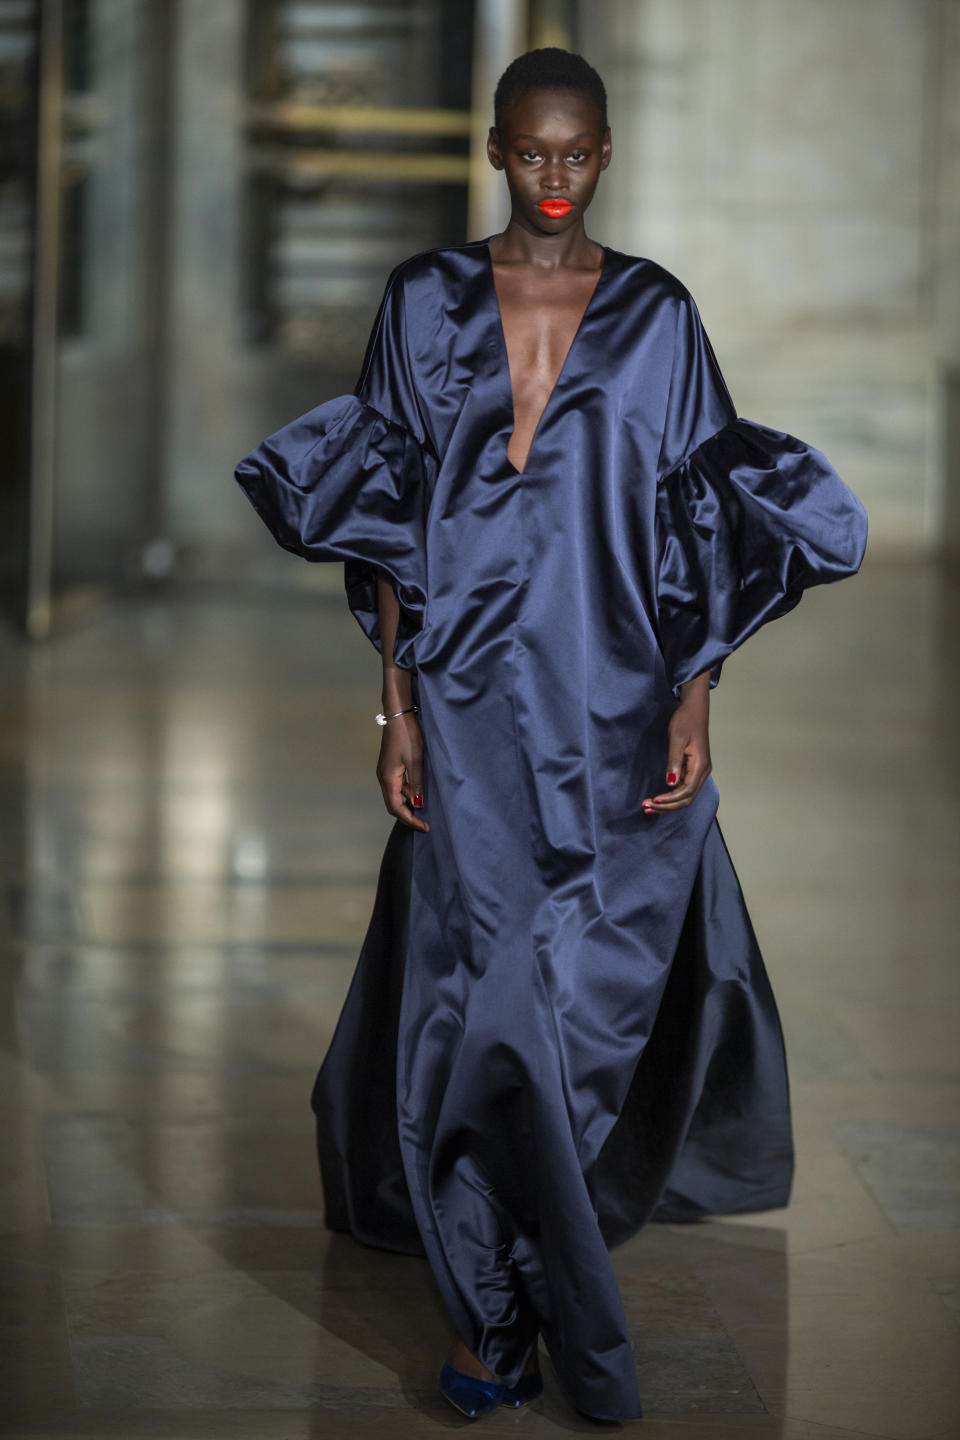 The Oscar De la Renta collection is modeled during Fashion Week, Monday, Feb. 10, 2020, in New York. (AP Photo/Eduardo Munoz Alvarez)